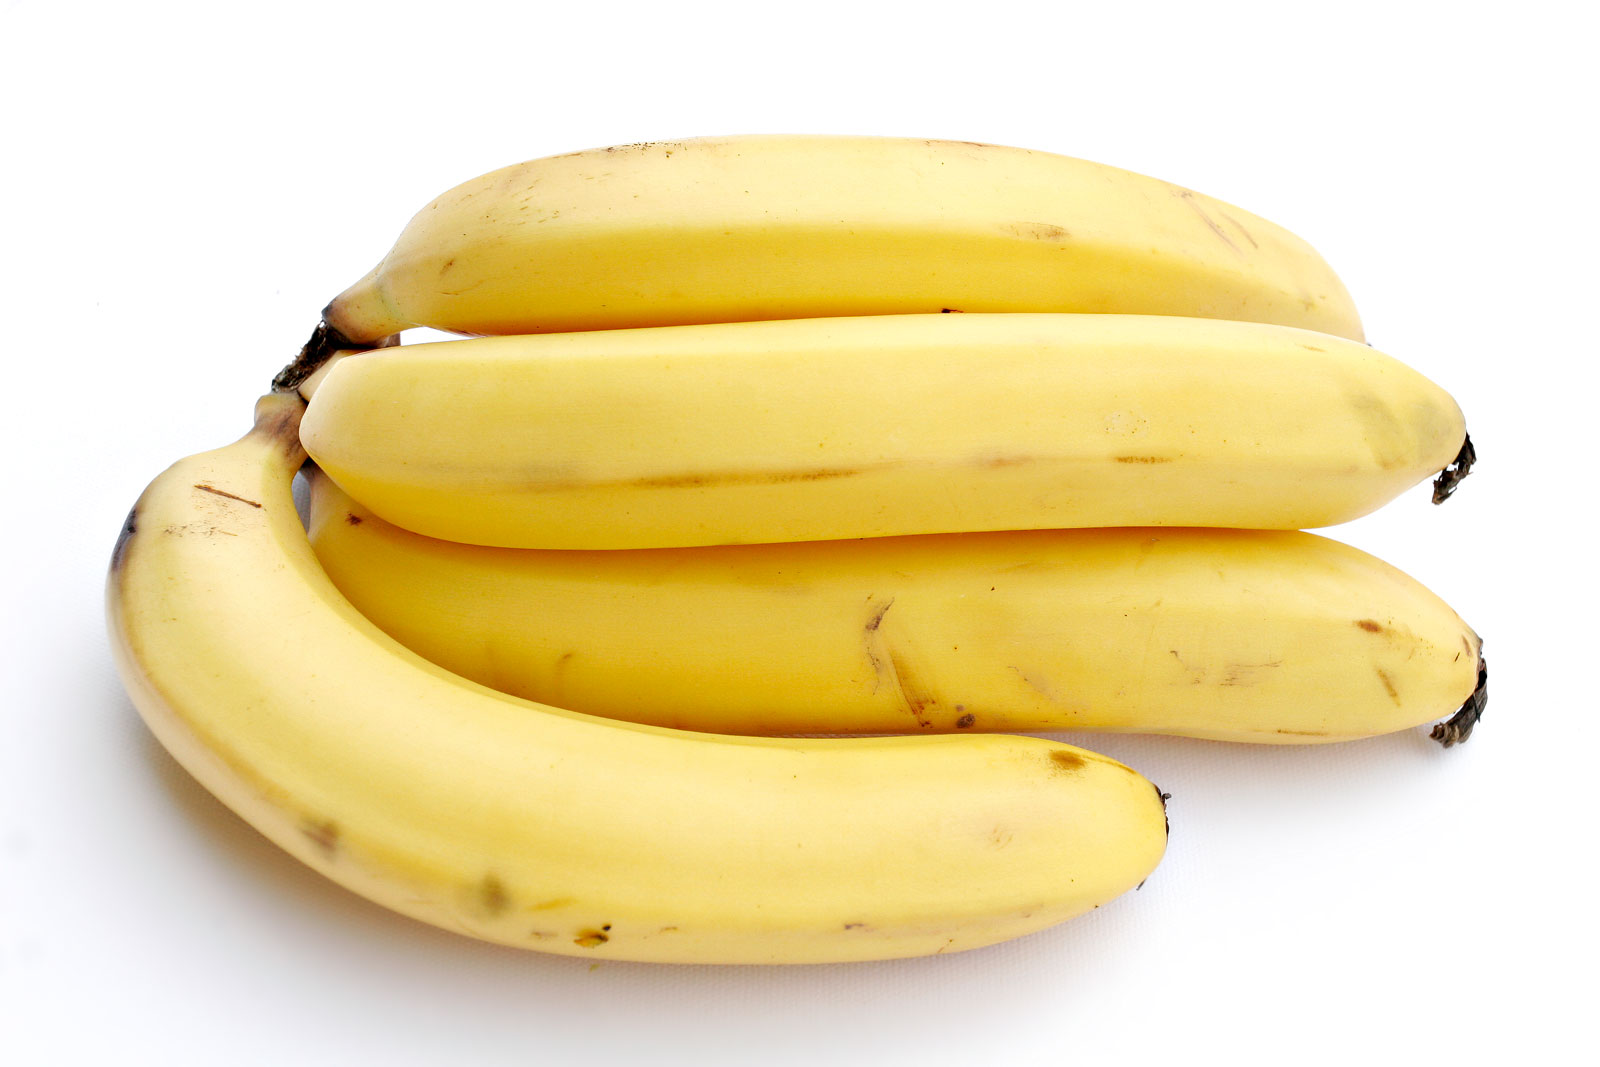 File:Bananas white background.jpg